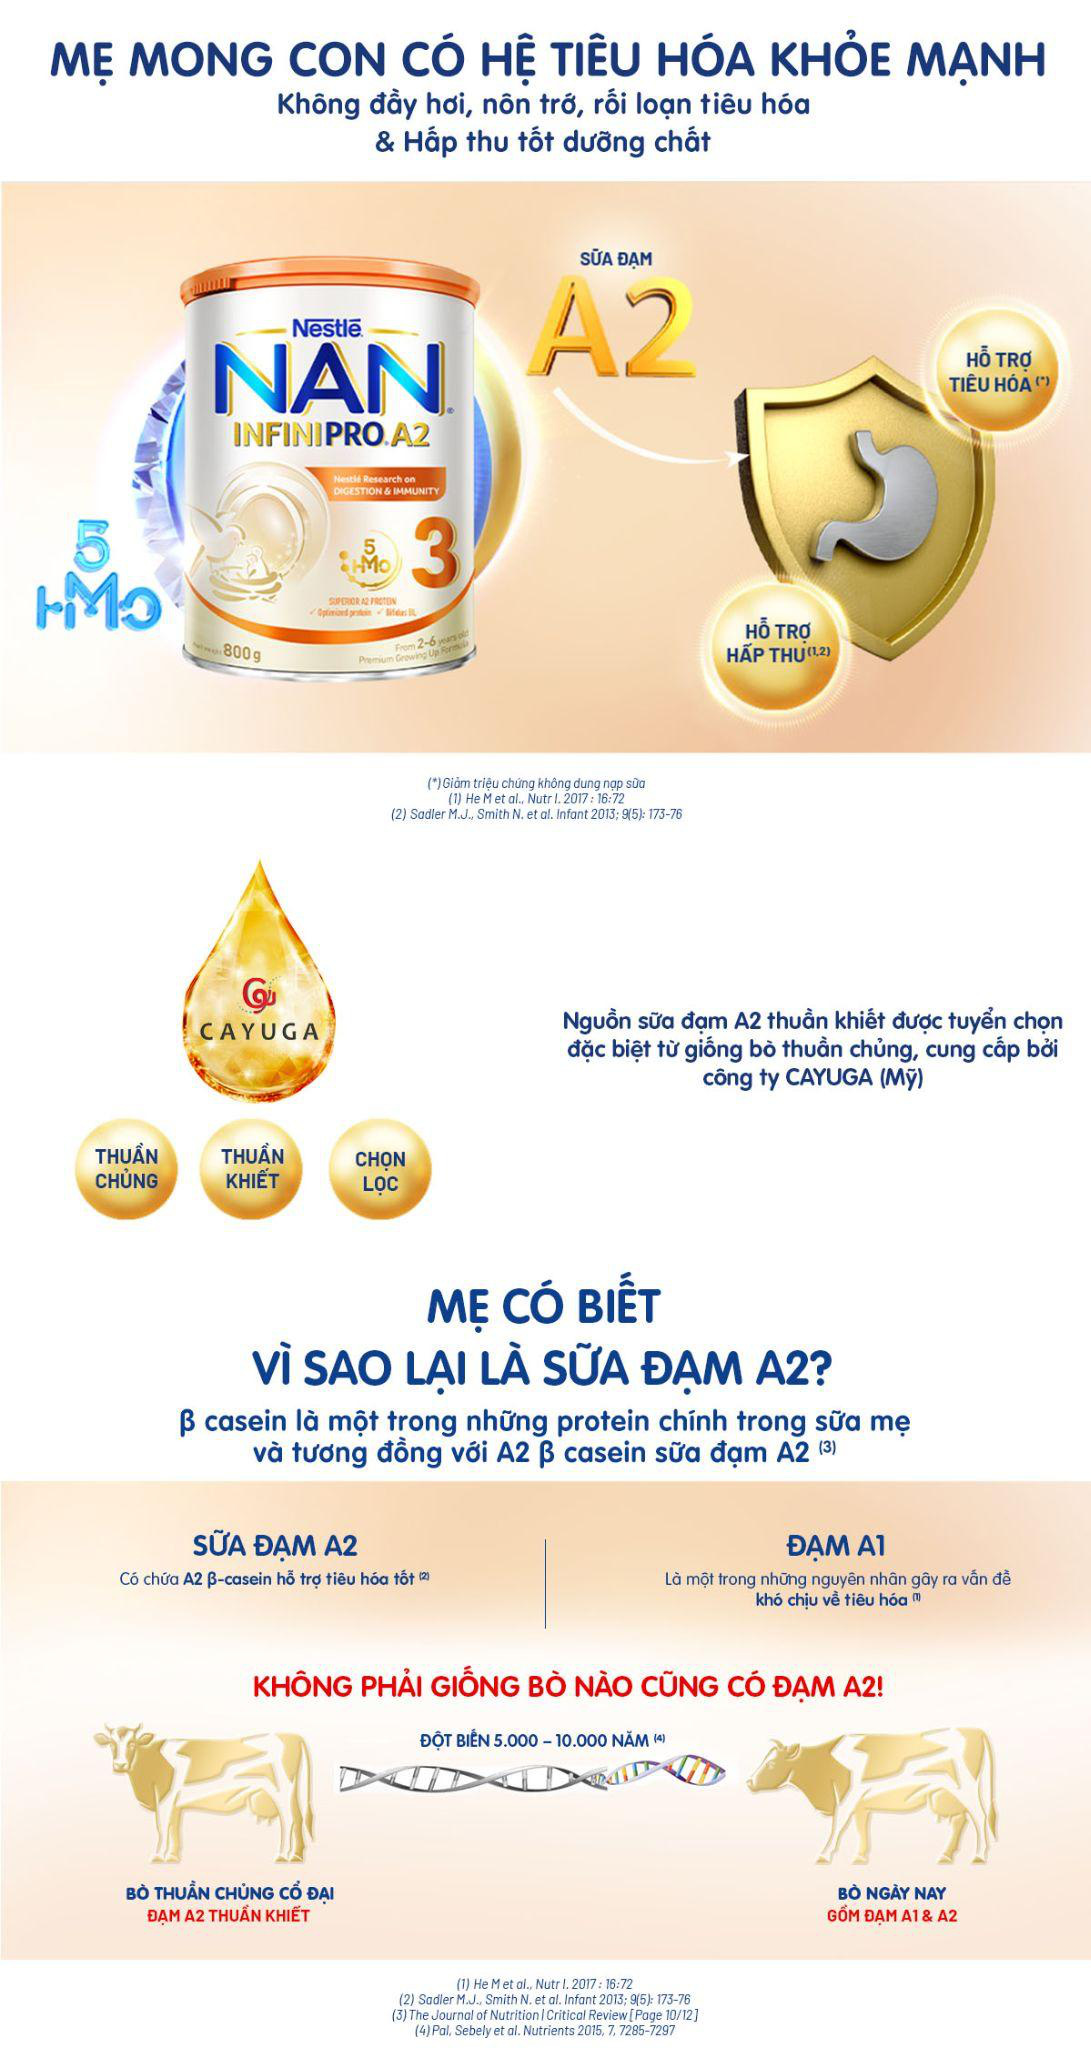 Nestlé Việt Nam ra mắt siêu phẩm dinh dưỡng NAN INFINIPRO A2 - Ảnh 2.